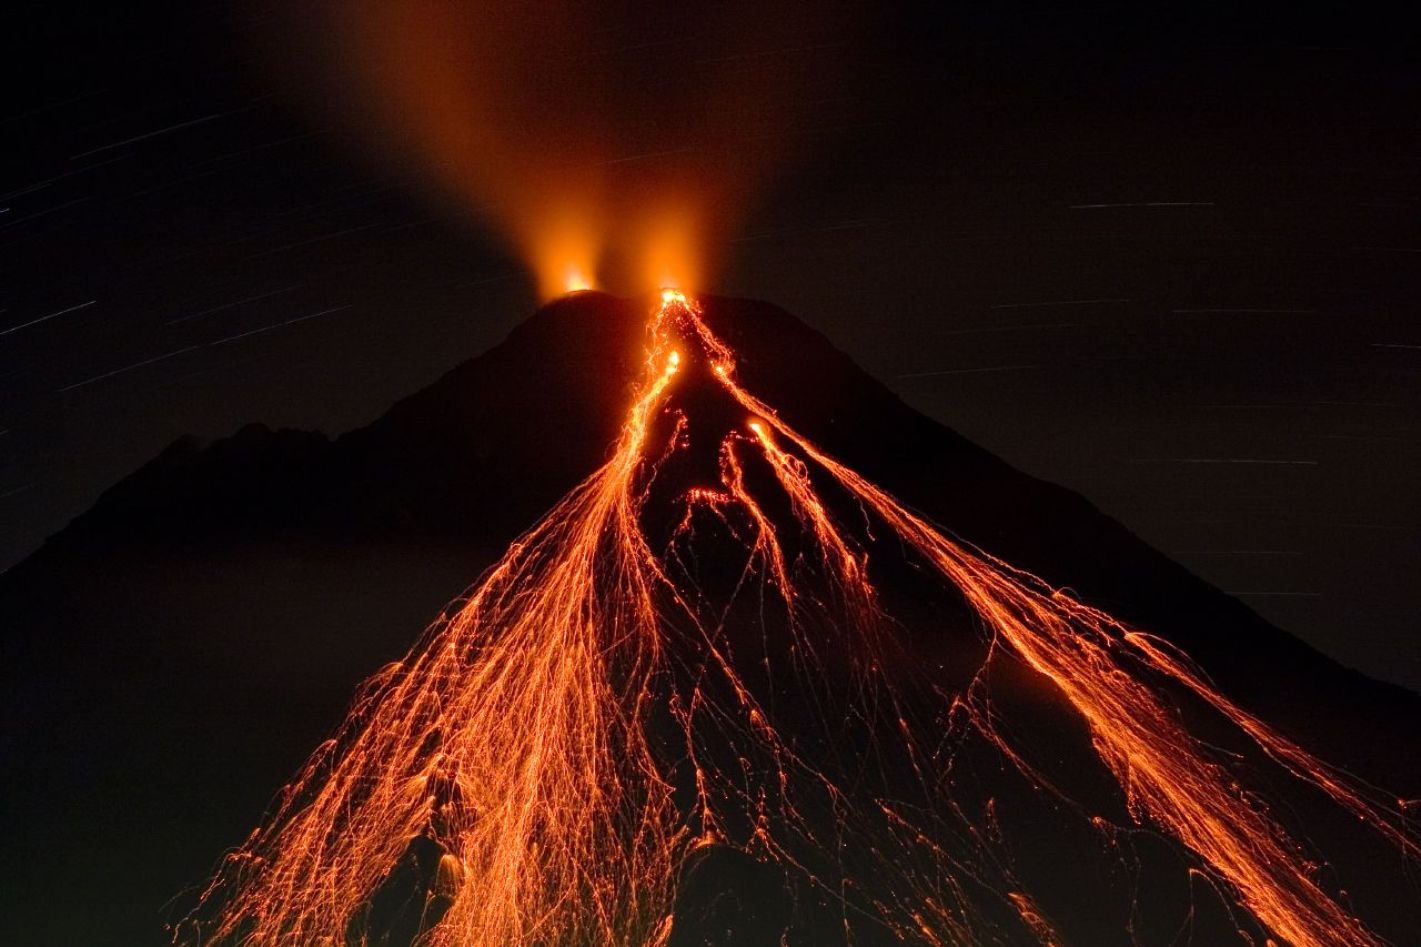 L'activité volcanique et la fonte des glaces sont deux phénomènes liés qui façonnent notre planète. Ici, l'Arenal, un volcan situé au Costa Rica, en éruption. C'est un jeune stratovolcan puisque sa première éruption s'est produite il y a 7.000 ans, ce qui fait même de lui le volcan le plus jeune du pays. © Matthew G. Landry, Wikipédia, CC by 2.5